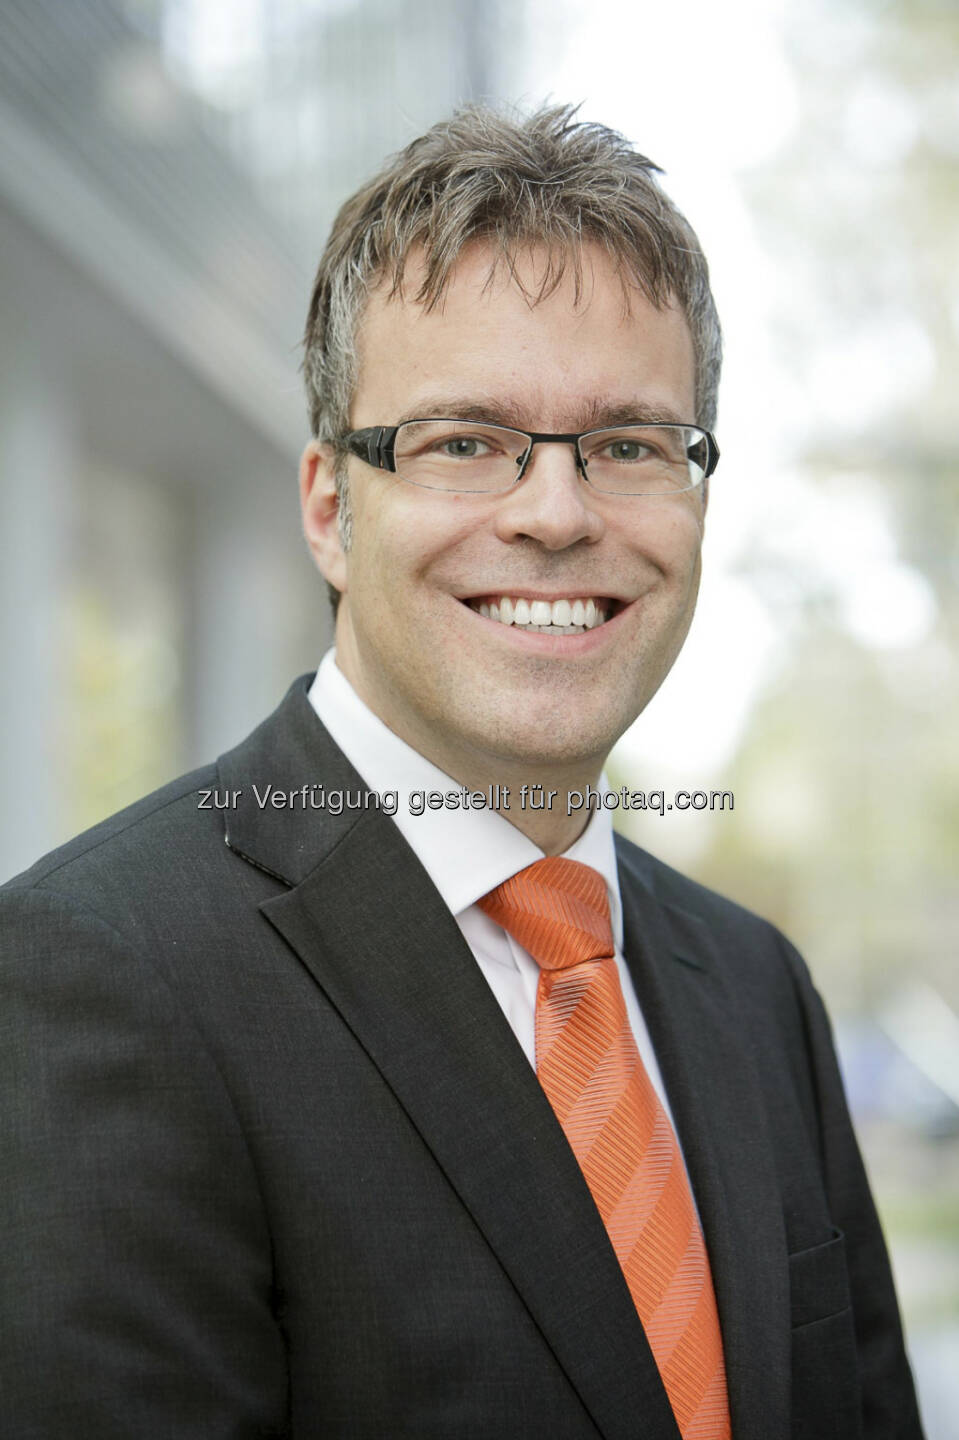 Volker Panreck ist der neue CFO/General Manager der ING-DiBa Direktbank Austria. Er folgt damit Thomas Geis, der zur Muttergesellschaft ING-DiBa AG in Frankfurt zurückkehrt und übernimmt die Zuständigkeitsbereiche Finance & Controlling, Compliance, Legal, Risikomanagement sowie Projektmanagement und Interne Services (c) ING-DiBa